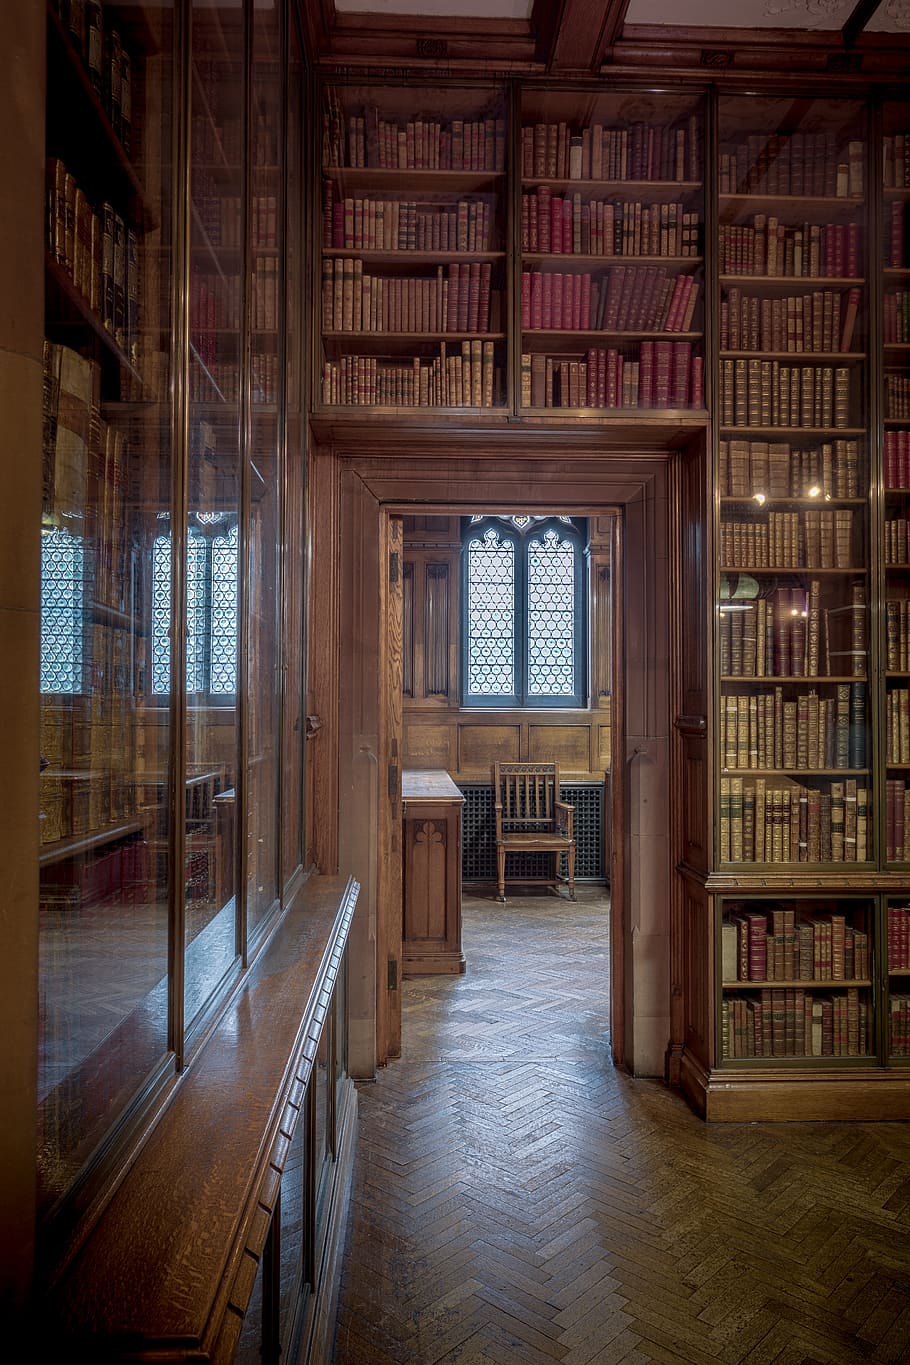 la biblioteca de john rylands, bibliotecas, libros, estantería, estanterías, puertas, estudiar, aprender, universidad, universidad de manchester